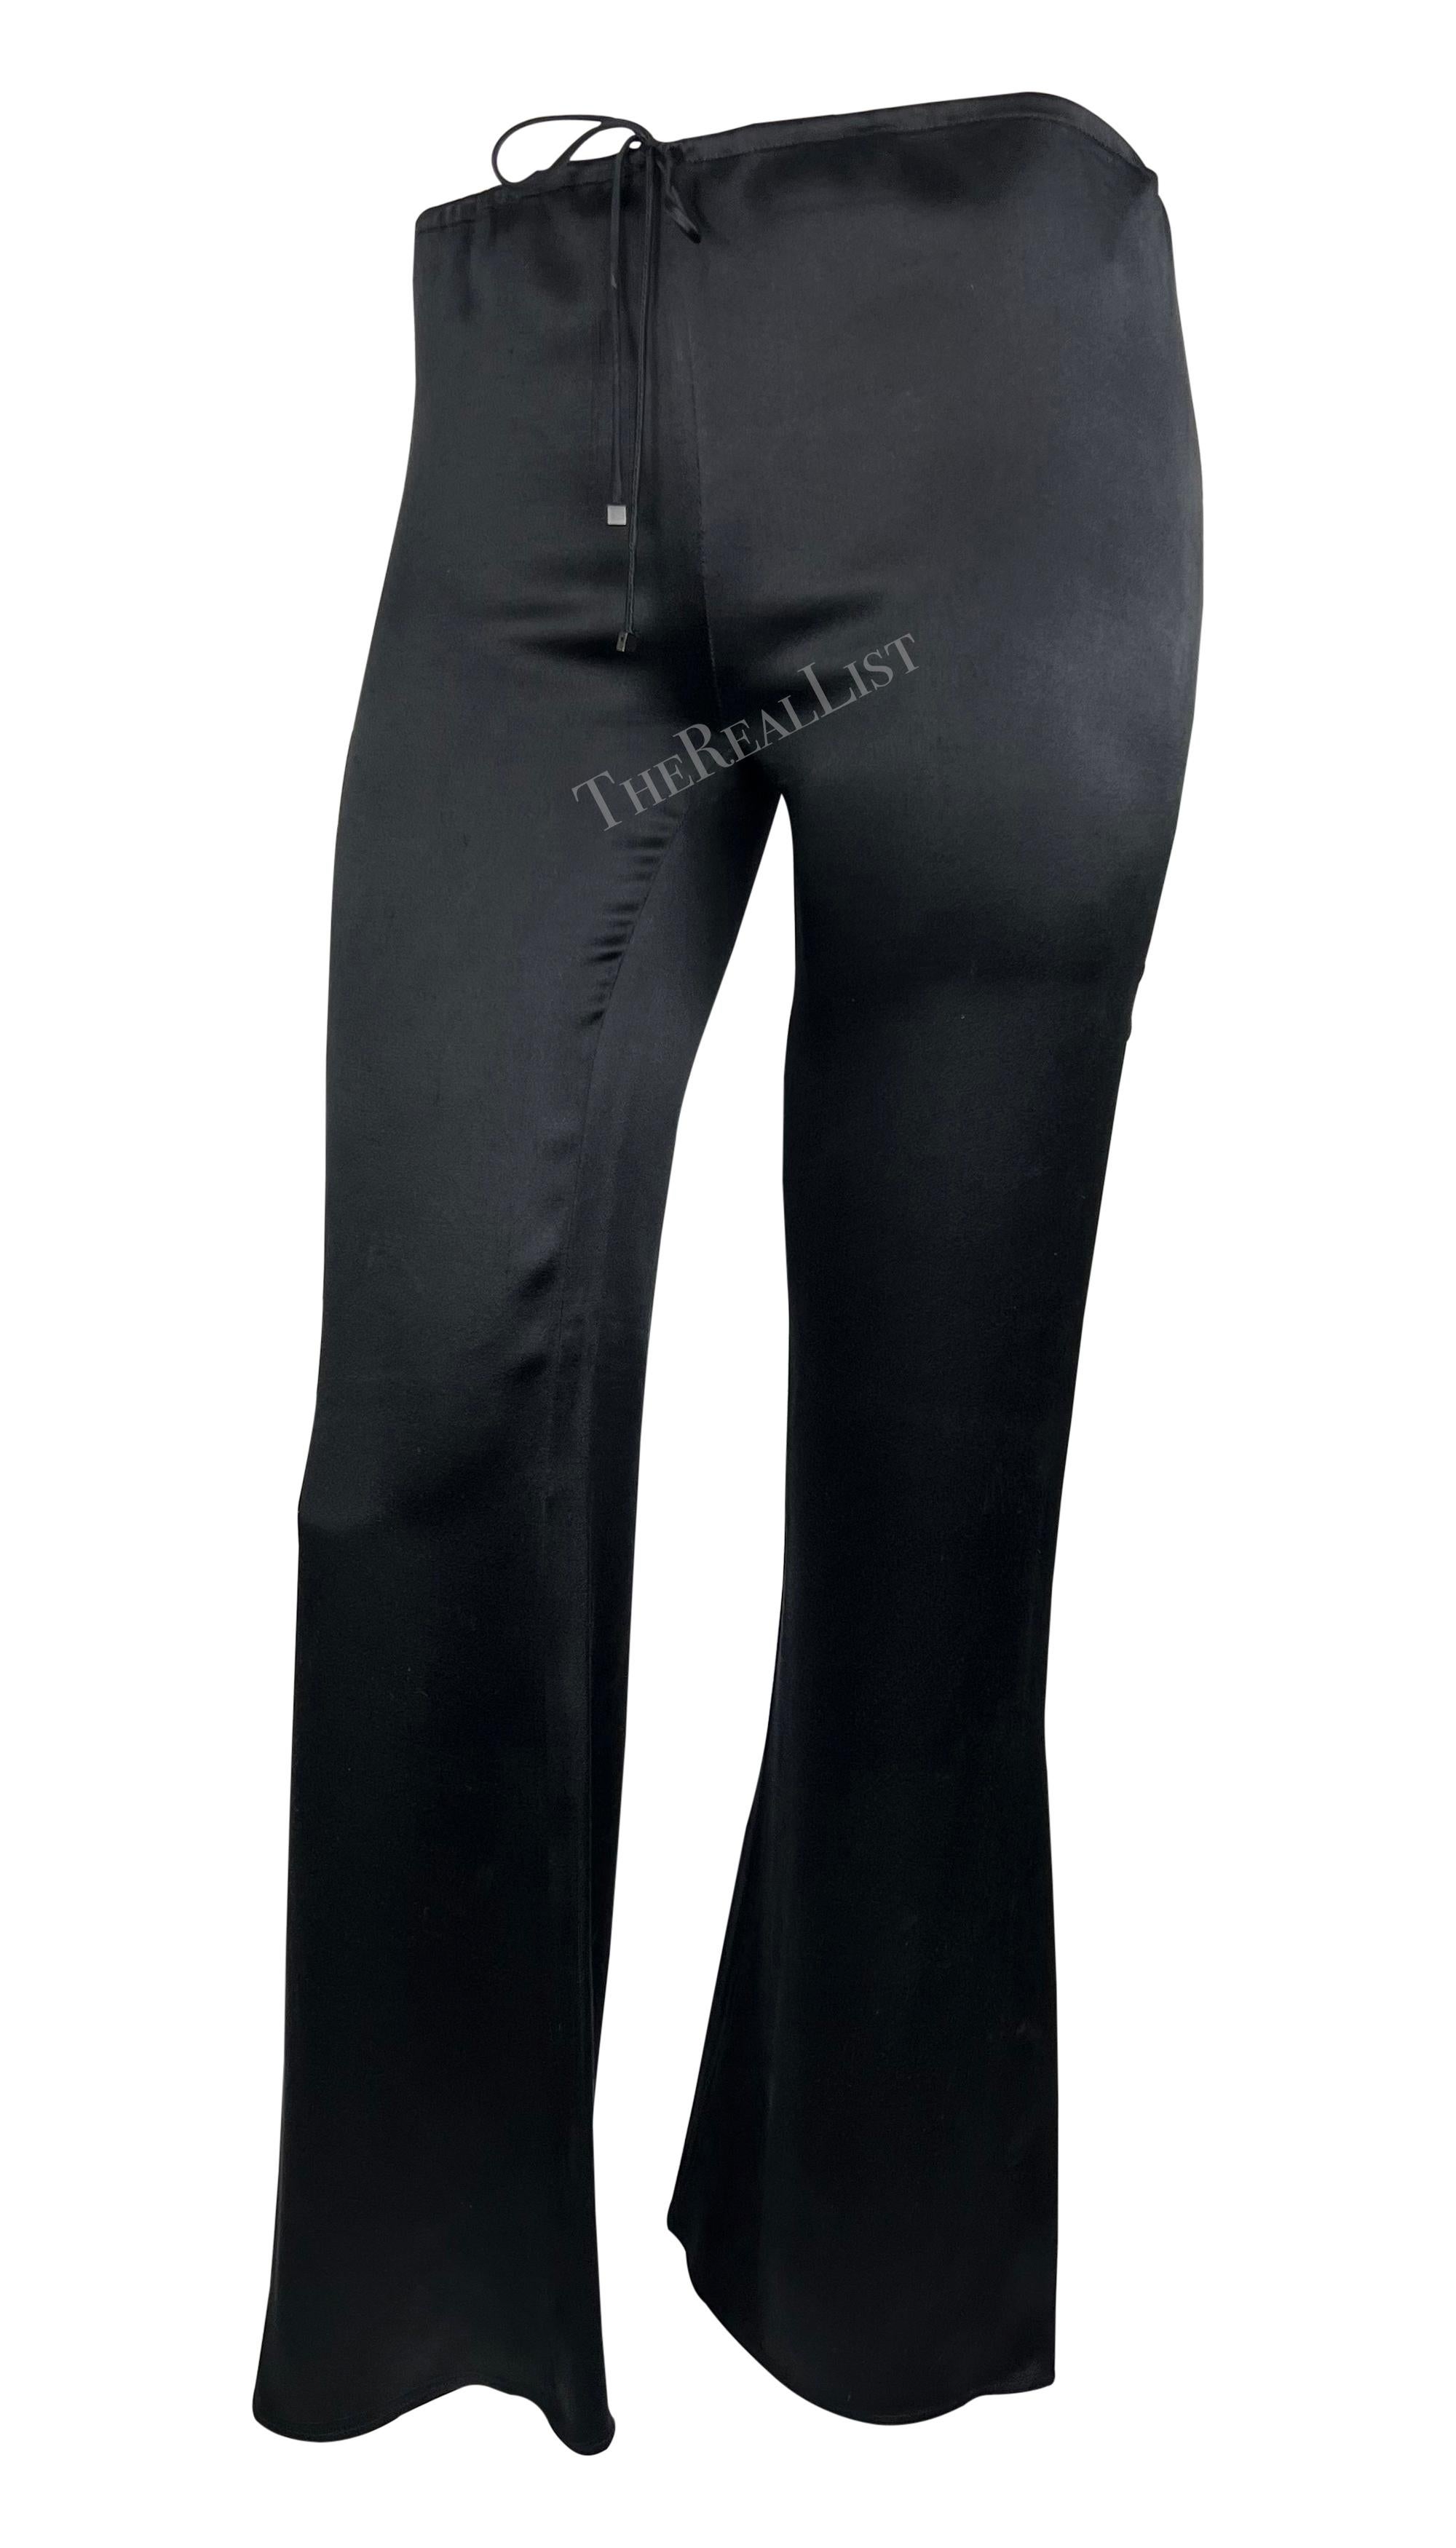 Entièrement réalisé en soie noire douce, ce pantalon à cordon de Gucci, dessiné par Tom Ford, est issu de la collection Croisière 2000. Dotées d'une coupe évasée flatteuse, elles constituent un élément essentiel de la garde-robe. 

Mesures